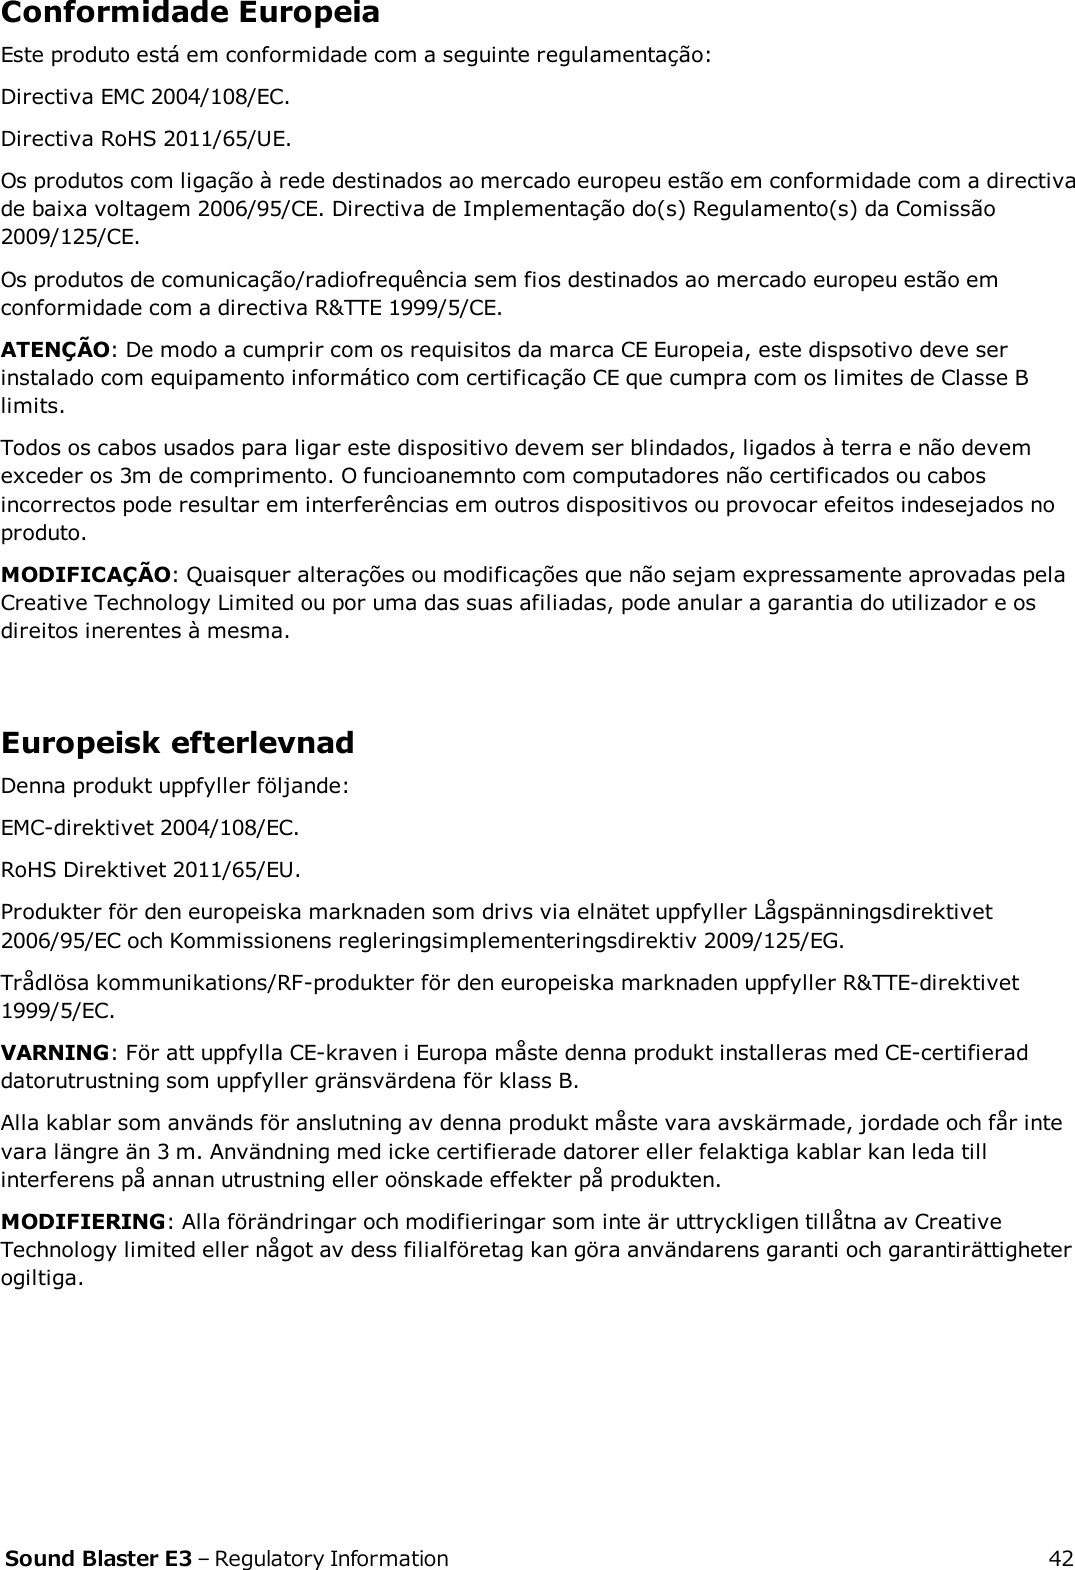 Conformidade EuropeiaEste produto está em conformidade com a seguinte regulamentação:Directiva EMC 2004/108/EC.Directiva RoHS 2011/65/UE.Os produtos com ligação à rede destinados ao mercado europeu estão em conformidade com a directivade baixa voltagem 2006/95/CE. Directiva de Implementação do(s) Regulamento(s) da Comissão2009/125/CE.Os produtos de comunicação/radiofrequência sem fios destinados ao mercado europeu estão emconformidade com a directiva R&amp;TTE 1999/5/CE.ATENÇÃO: De modo a cumprir com os requisitos da marca CE Europeia, este dispsotivo deve serinstalado com equipamento informático com certificação CE que cumpra com os limites de Classe Blimits.Todos os cabos usados para ligar este dispositivo devem ser blindados, ligados à terra e não devemexceder os 3m de comprimento. O funcioanemnto com computadores não certificados ou cabosincorrectos pode resultar em interferências em outros dispositivos ou provocar efeitos indesejados noproduto.MODIFICAÇÃO: Quaisquer alterações ou modificações que não sejam expressamente aprovadas pelaCreative Technology Limited ou por uma das suas afiliadas, pode anular a garantia do utilizador e osdireitos inerentes à mesma.Europeisk efterlevnadDenna produkt uppfyller följande:EMC-direktivet 2004/108/EC.RoHS Direktivet 2011/65/EU.Produkter för den europeiska marknaden som drivs via elnätet uppfyller Lågspänningsdirektivet2006/95/EC och Kommissionens regleringsimplementeringsdirektiv 2009/125/EG.Trådlösa kommunikations/RF-produkter för den europeiska marknaden uppfyller R&amp;TTE-direktivet1999/5/EC.VARNING: För att uppfylla CE-kraven i Europa måste denna produkt installeras med CE-certifieraddatorutrustning som uppfyller gränsvärdena för klass B.Alla kablar som används för anslutning av denna produkt måste vara avskärmade, jordade och får intevara längre än 3 m. Användning med icke certifierade datorer eller felaktiga kablar kan leda tillinterferens på annan utrustning eller oönskade effekter på produkten.MODIFIERING: Alla förändringar och modifieringar som inte är uttryckligen tillåtna av CreativeTechnology limited eller något av dess filialföretag kan göra användarens garanti och garantirättigheterogiltiga.Sound Blaster E3 – Regulatory Information 42